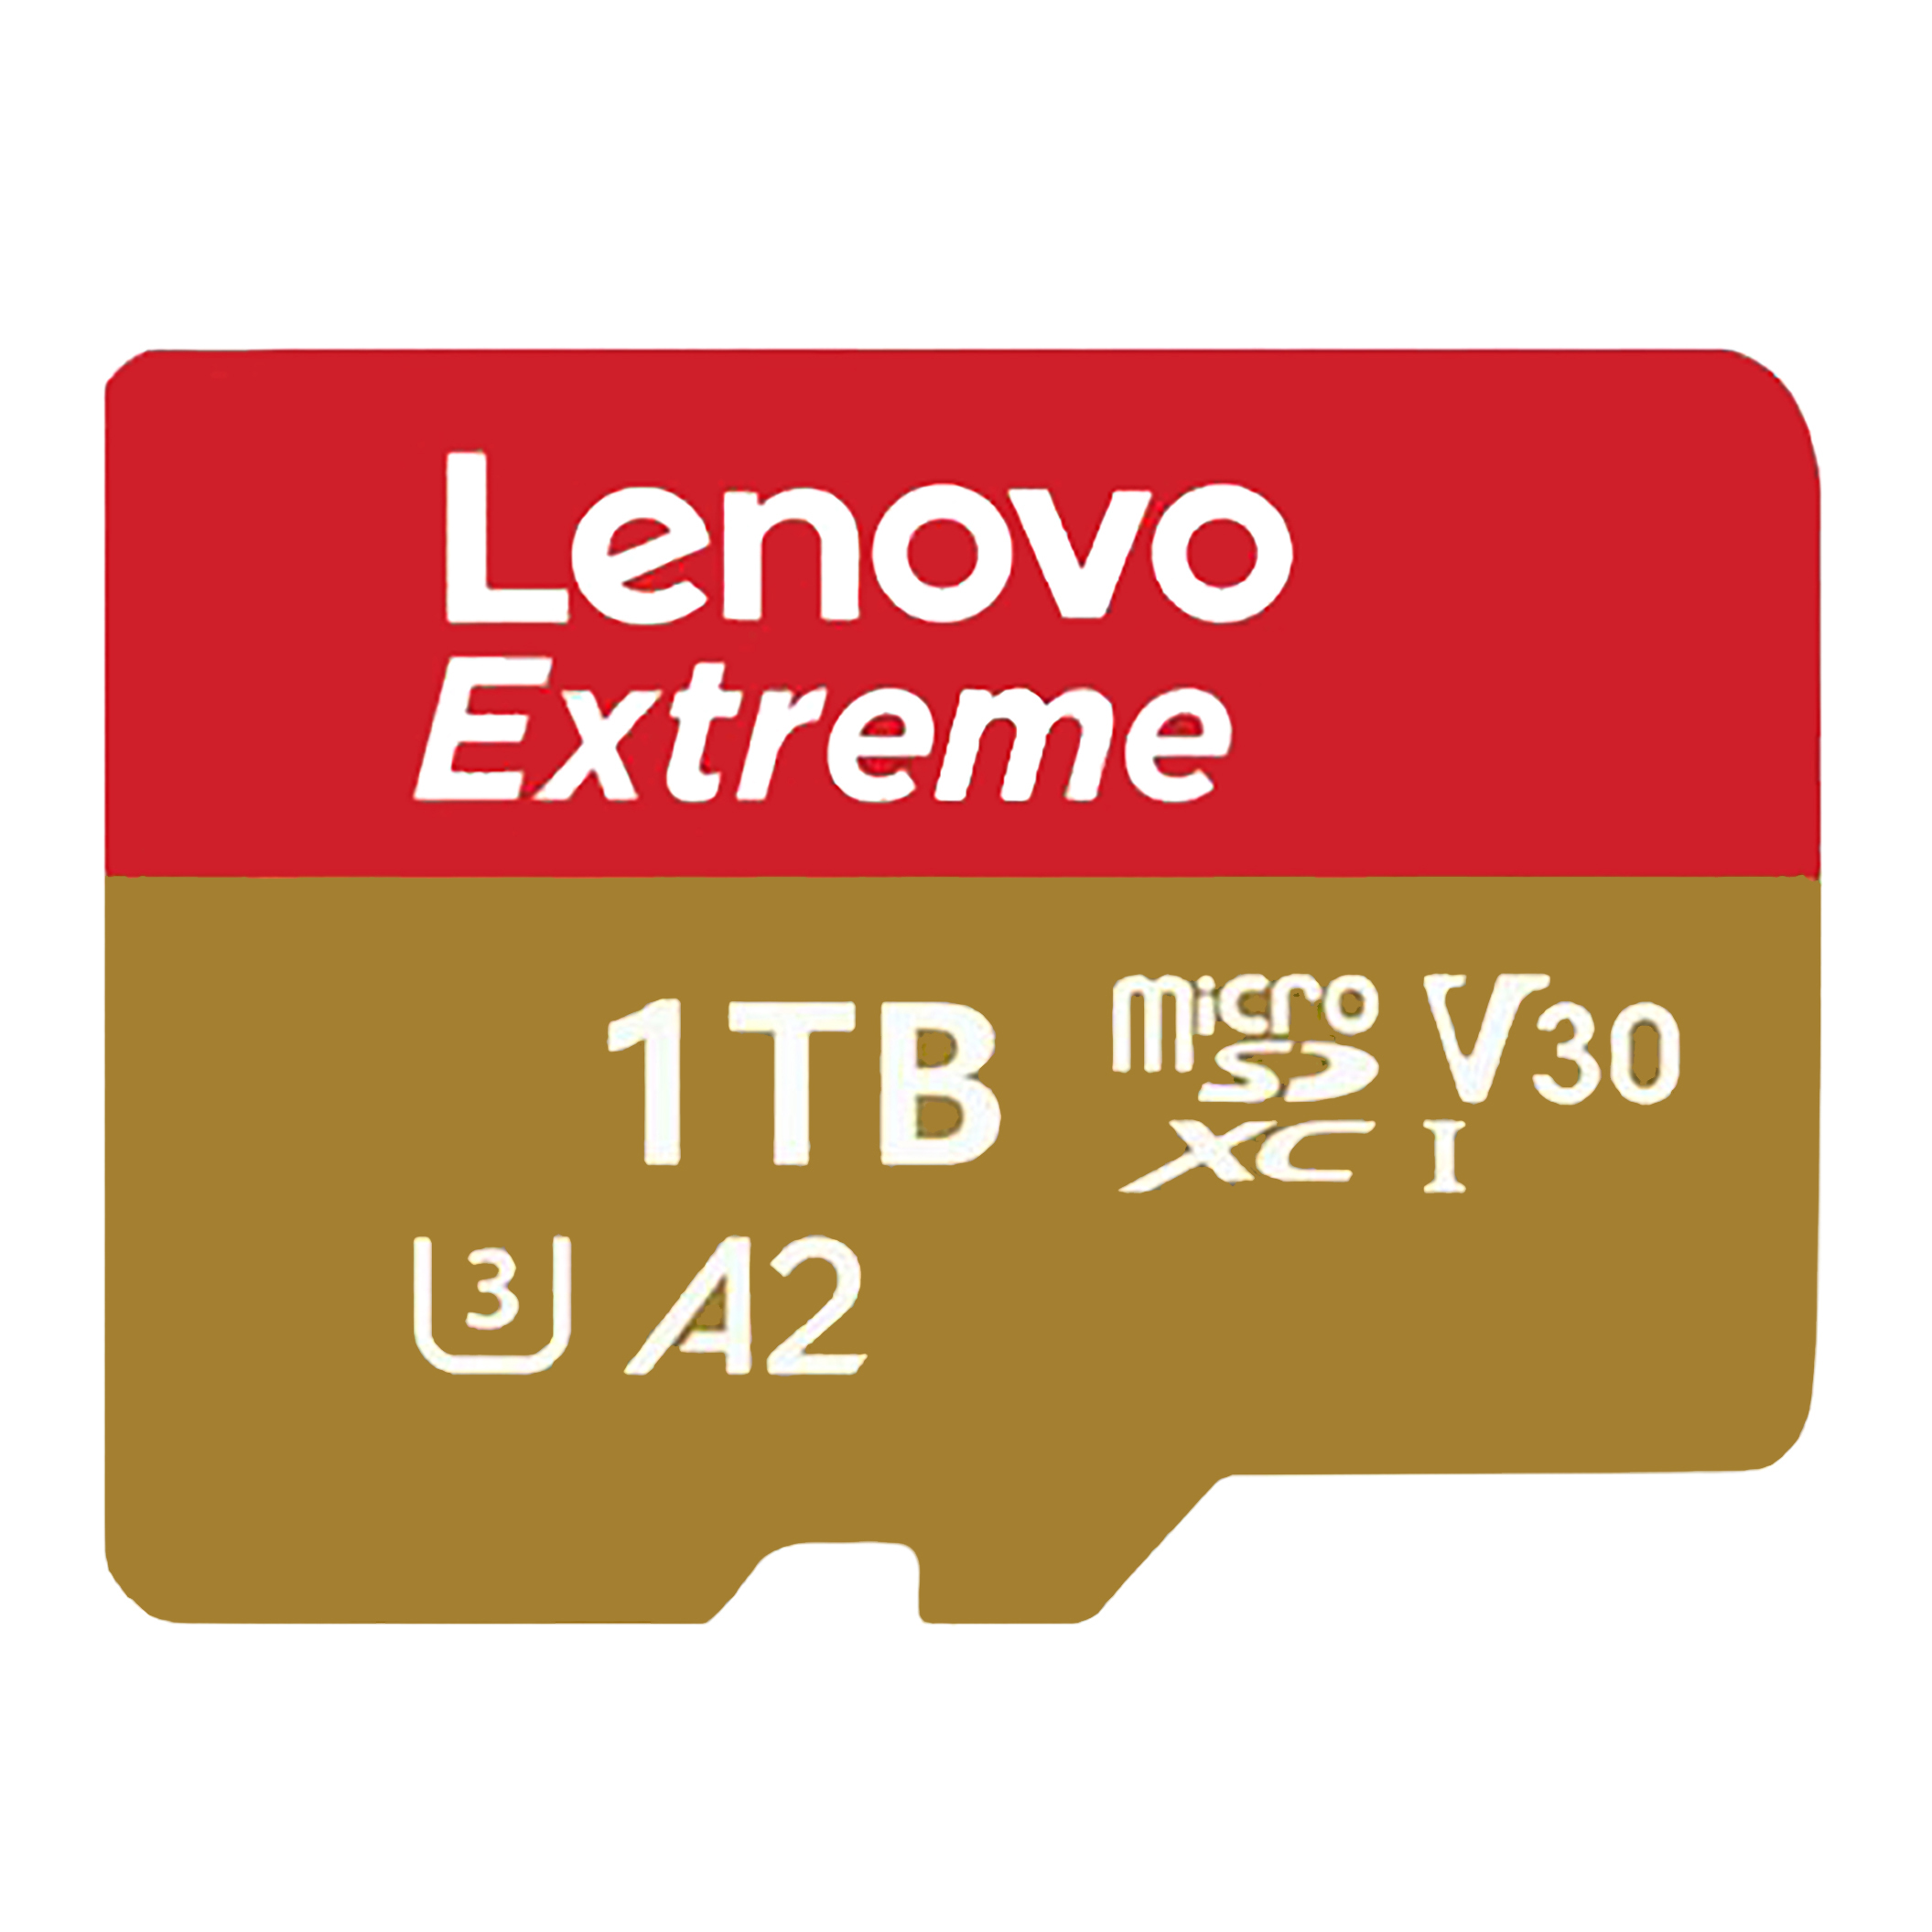  کارت حافظه MicroSDXC لنوو مدل Extreme economic A2 کلاس 10 استاندارد UHS-I U3 ورژن 30 سرعت 30MB/s ظرفیت 1 ترابایت